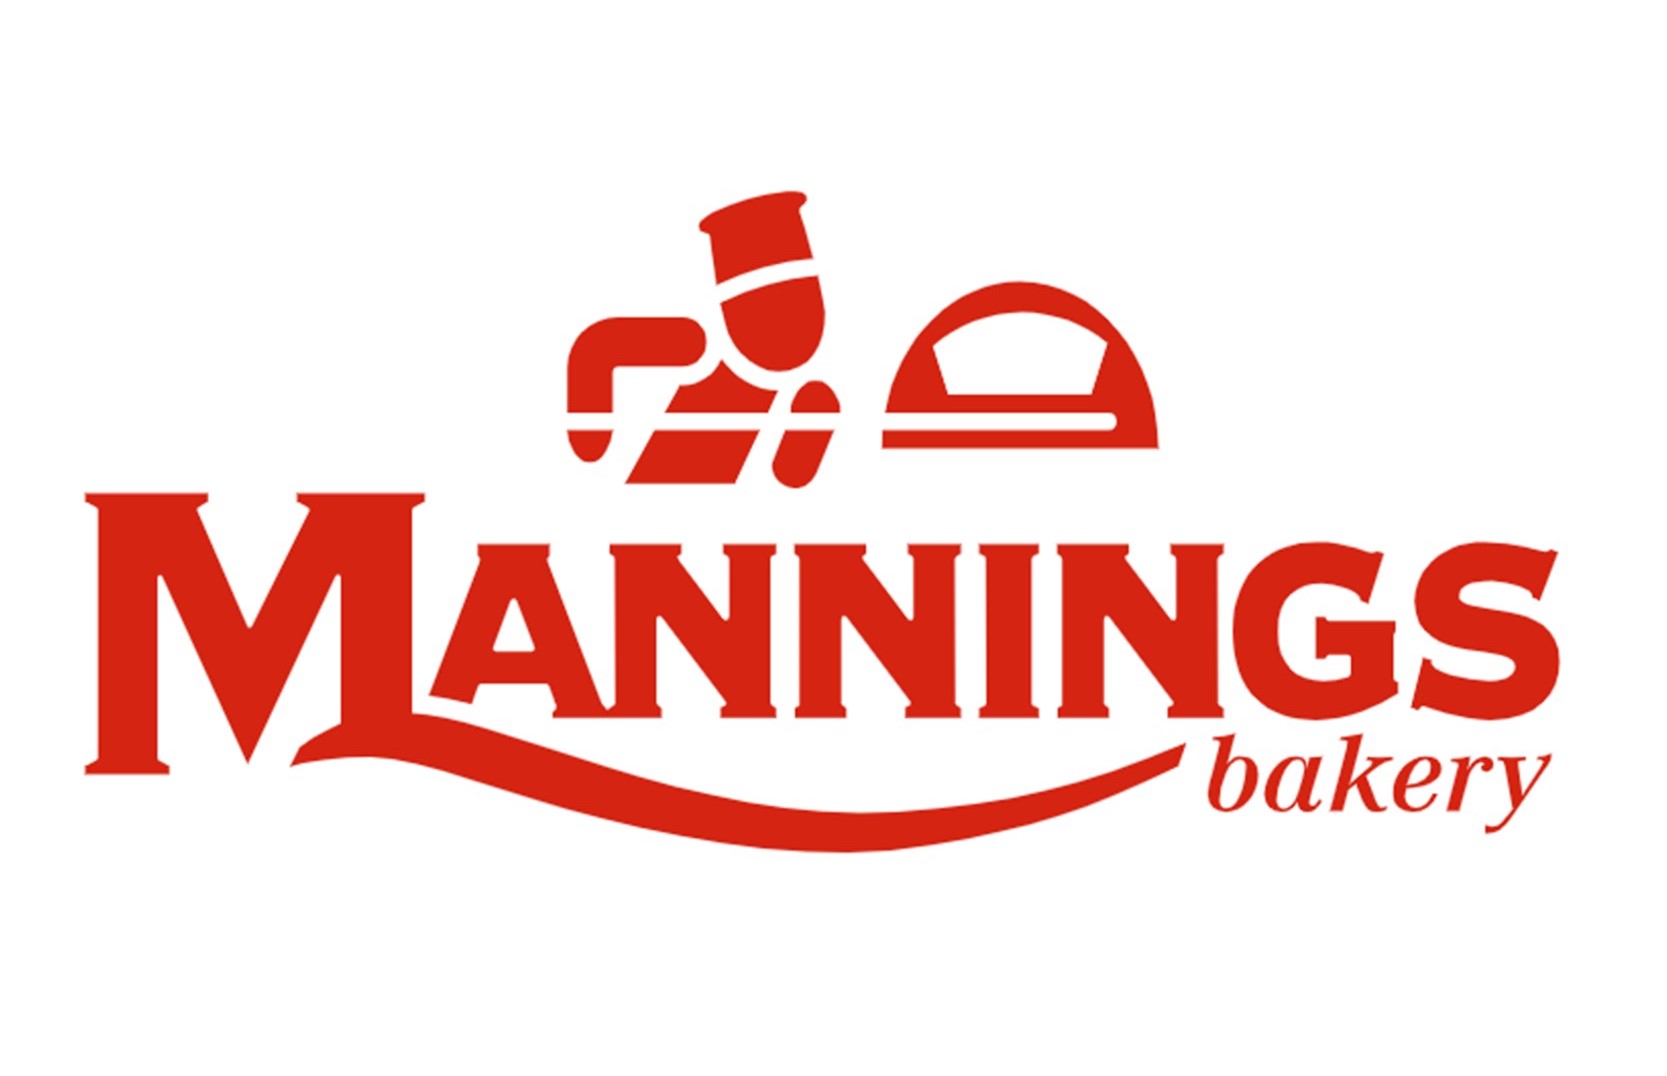 Manning's Bakery Ltd